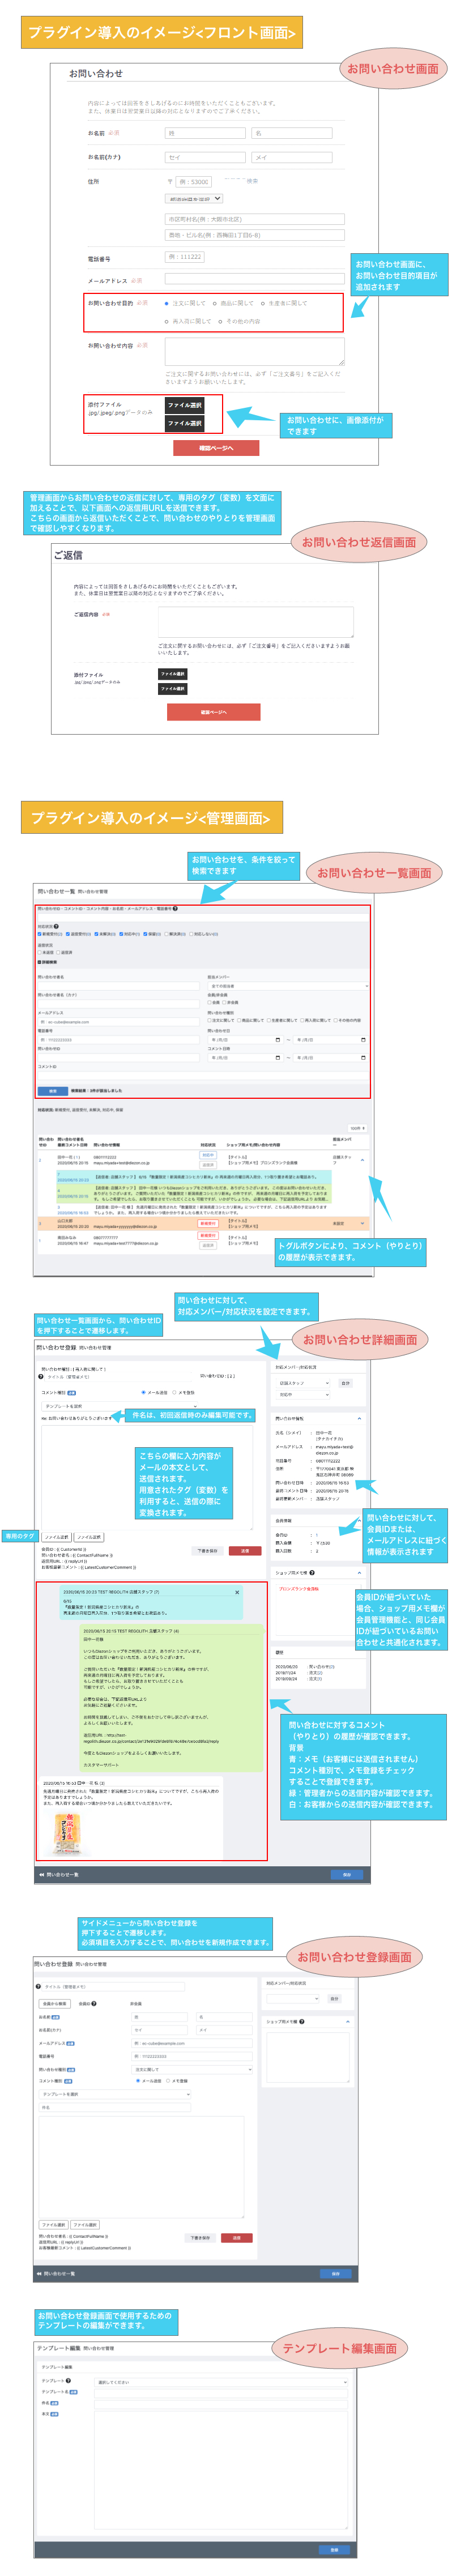 カスタマーサポートPRO for EC-CUBE(4.0/4.1系)|株式会社Diezon